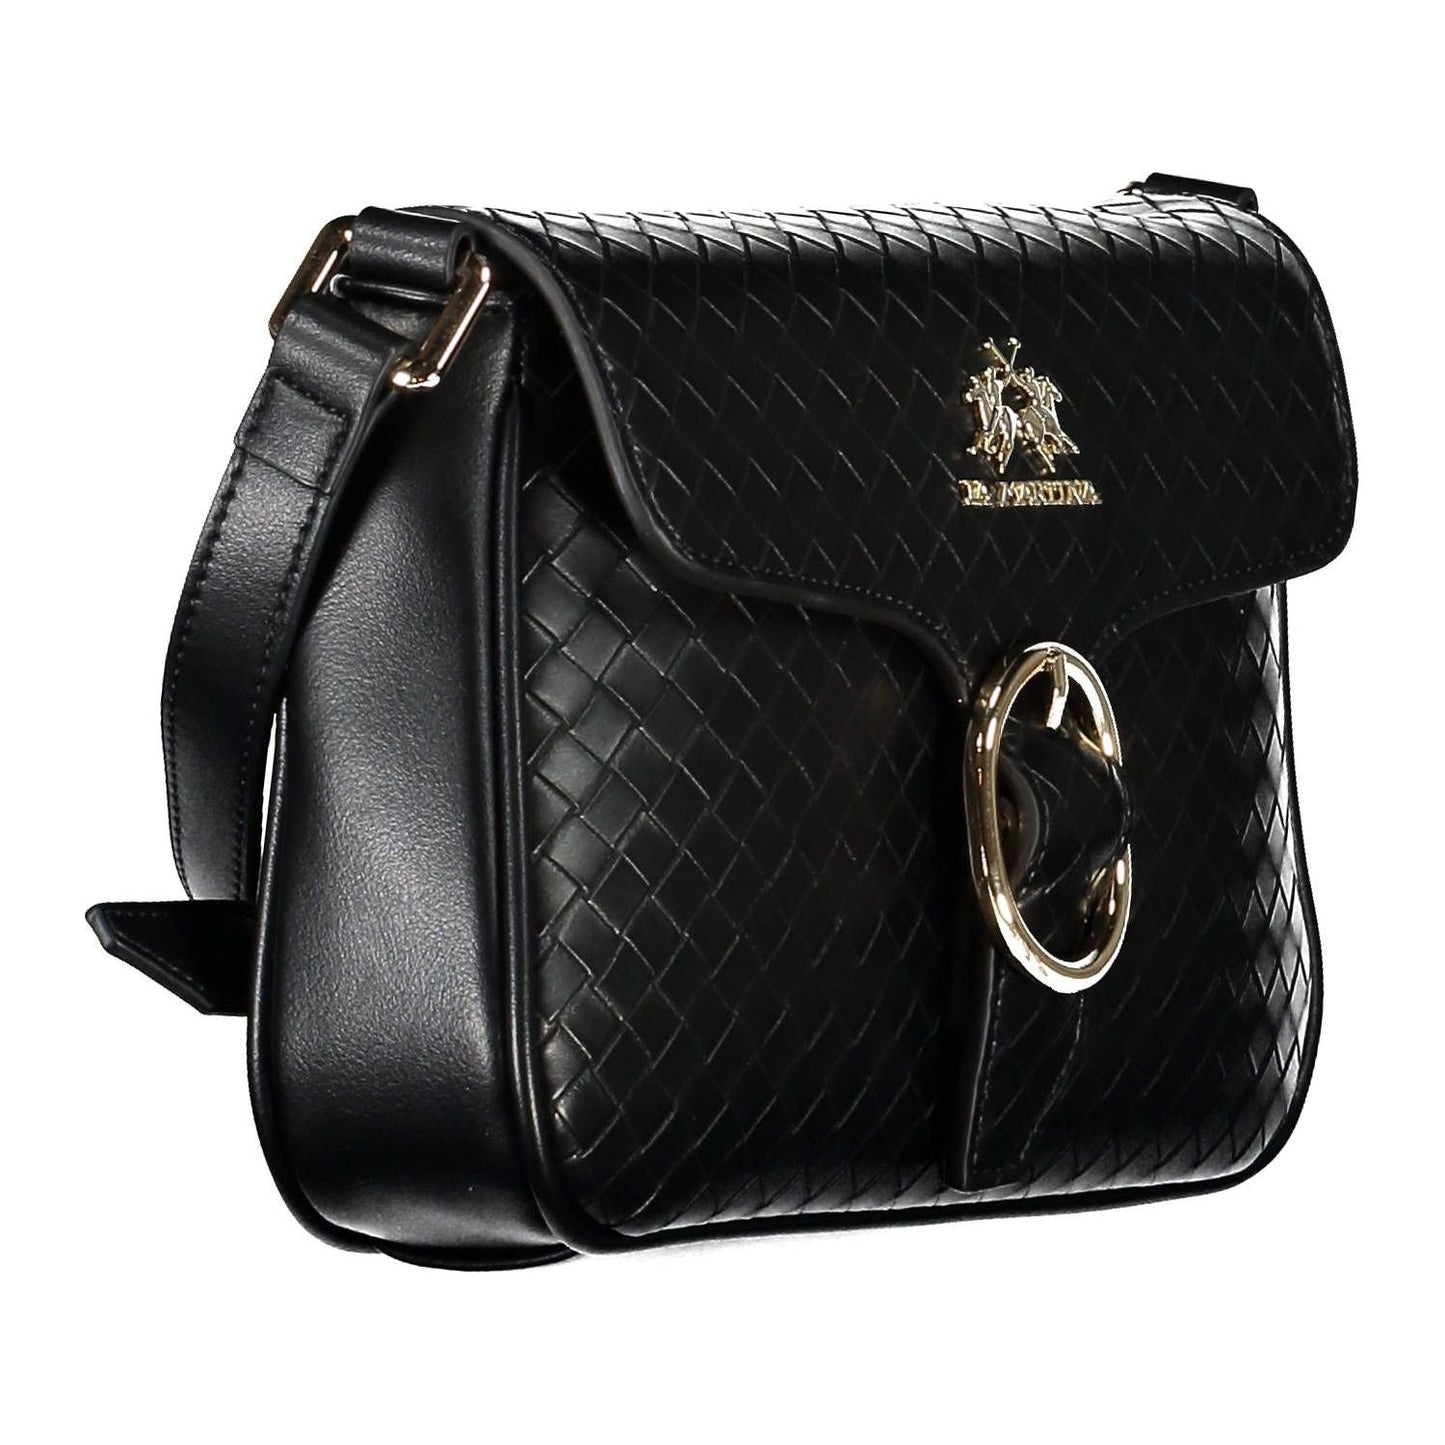 La Martina Elegant Black Shoulder Bag with Contrasting Details elegant-black-shoulder-bag-with-contrasting-details-1